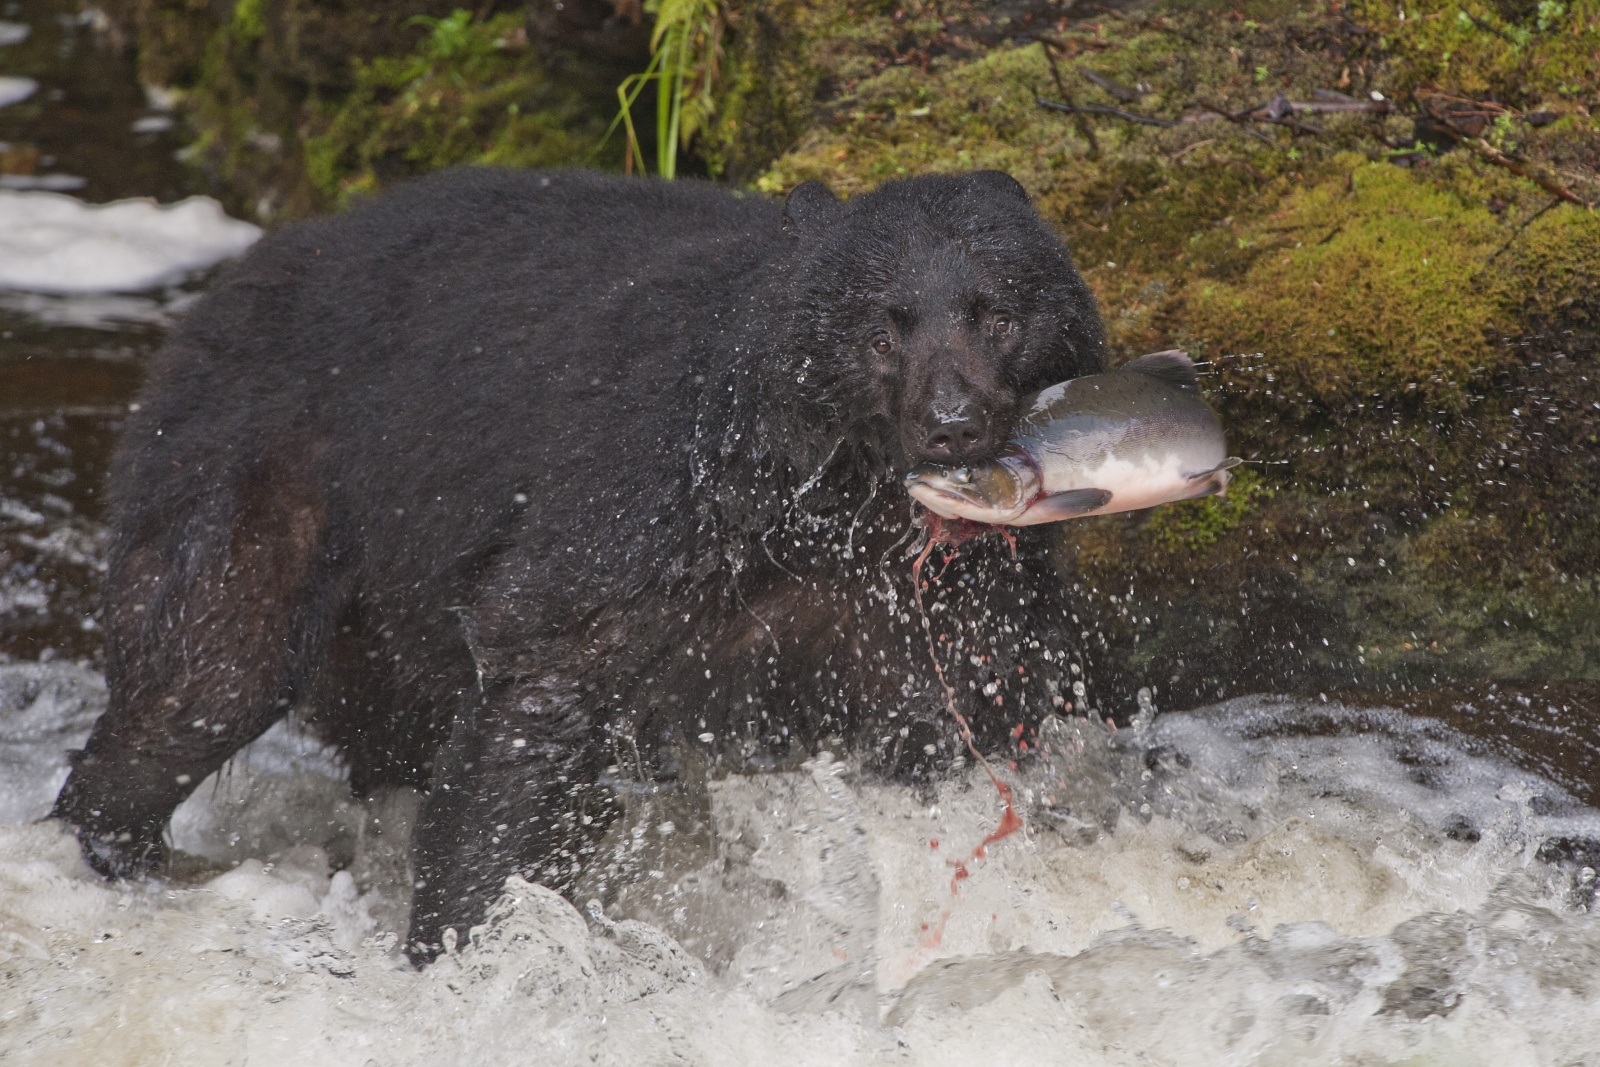 Nice Catch - Scatto finalista concorso GEO 2011

Un orso nero ha appena pescato un salmone nelle acque di un torrente all'isola di Prince of Wales in Alaska